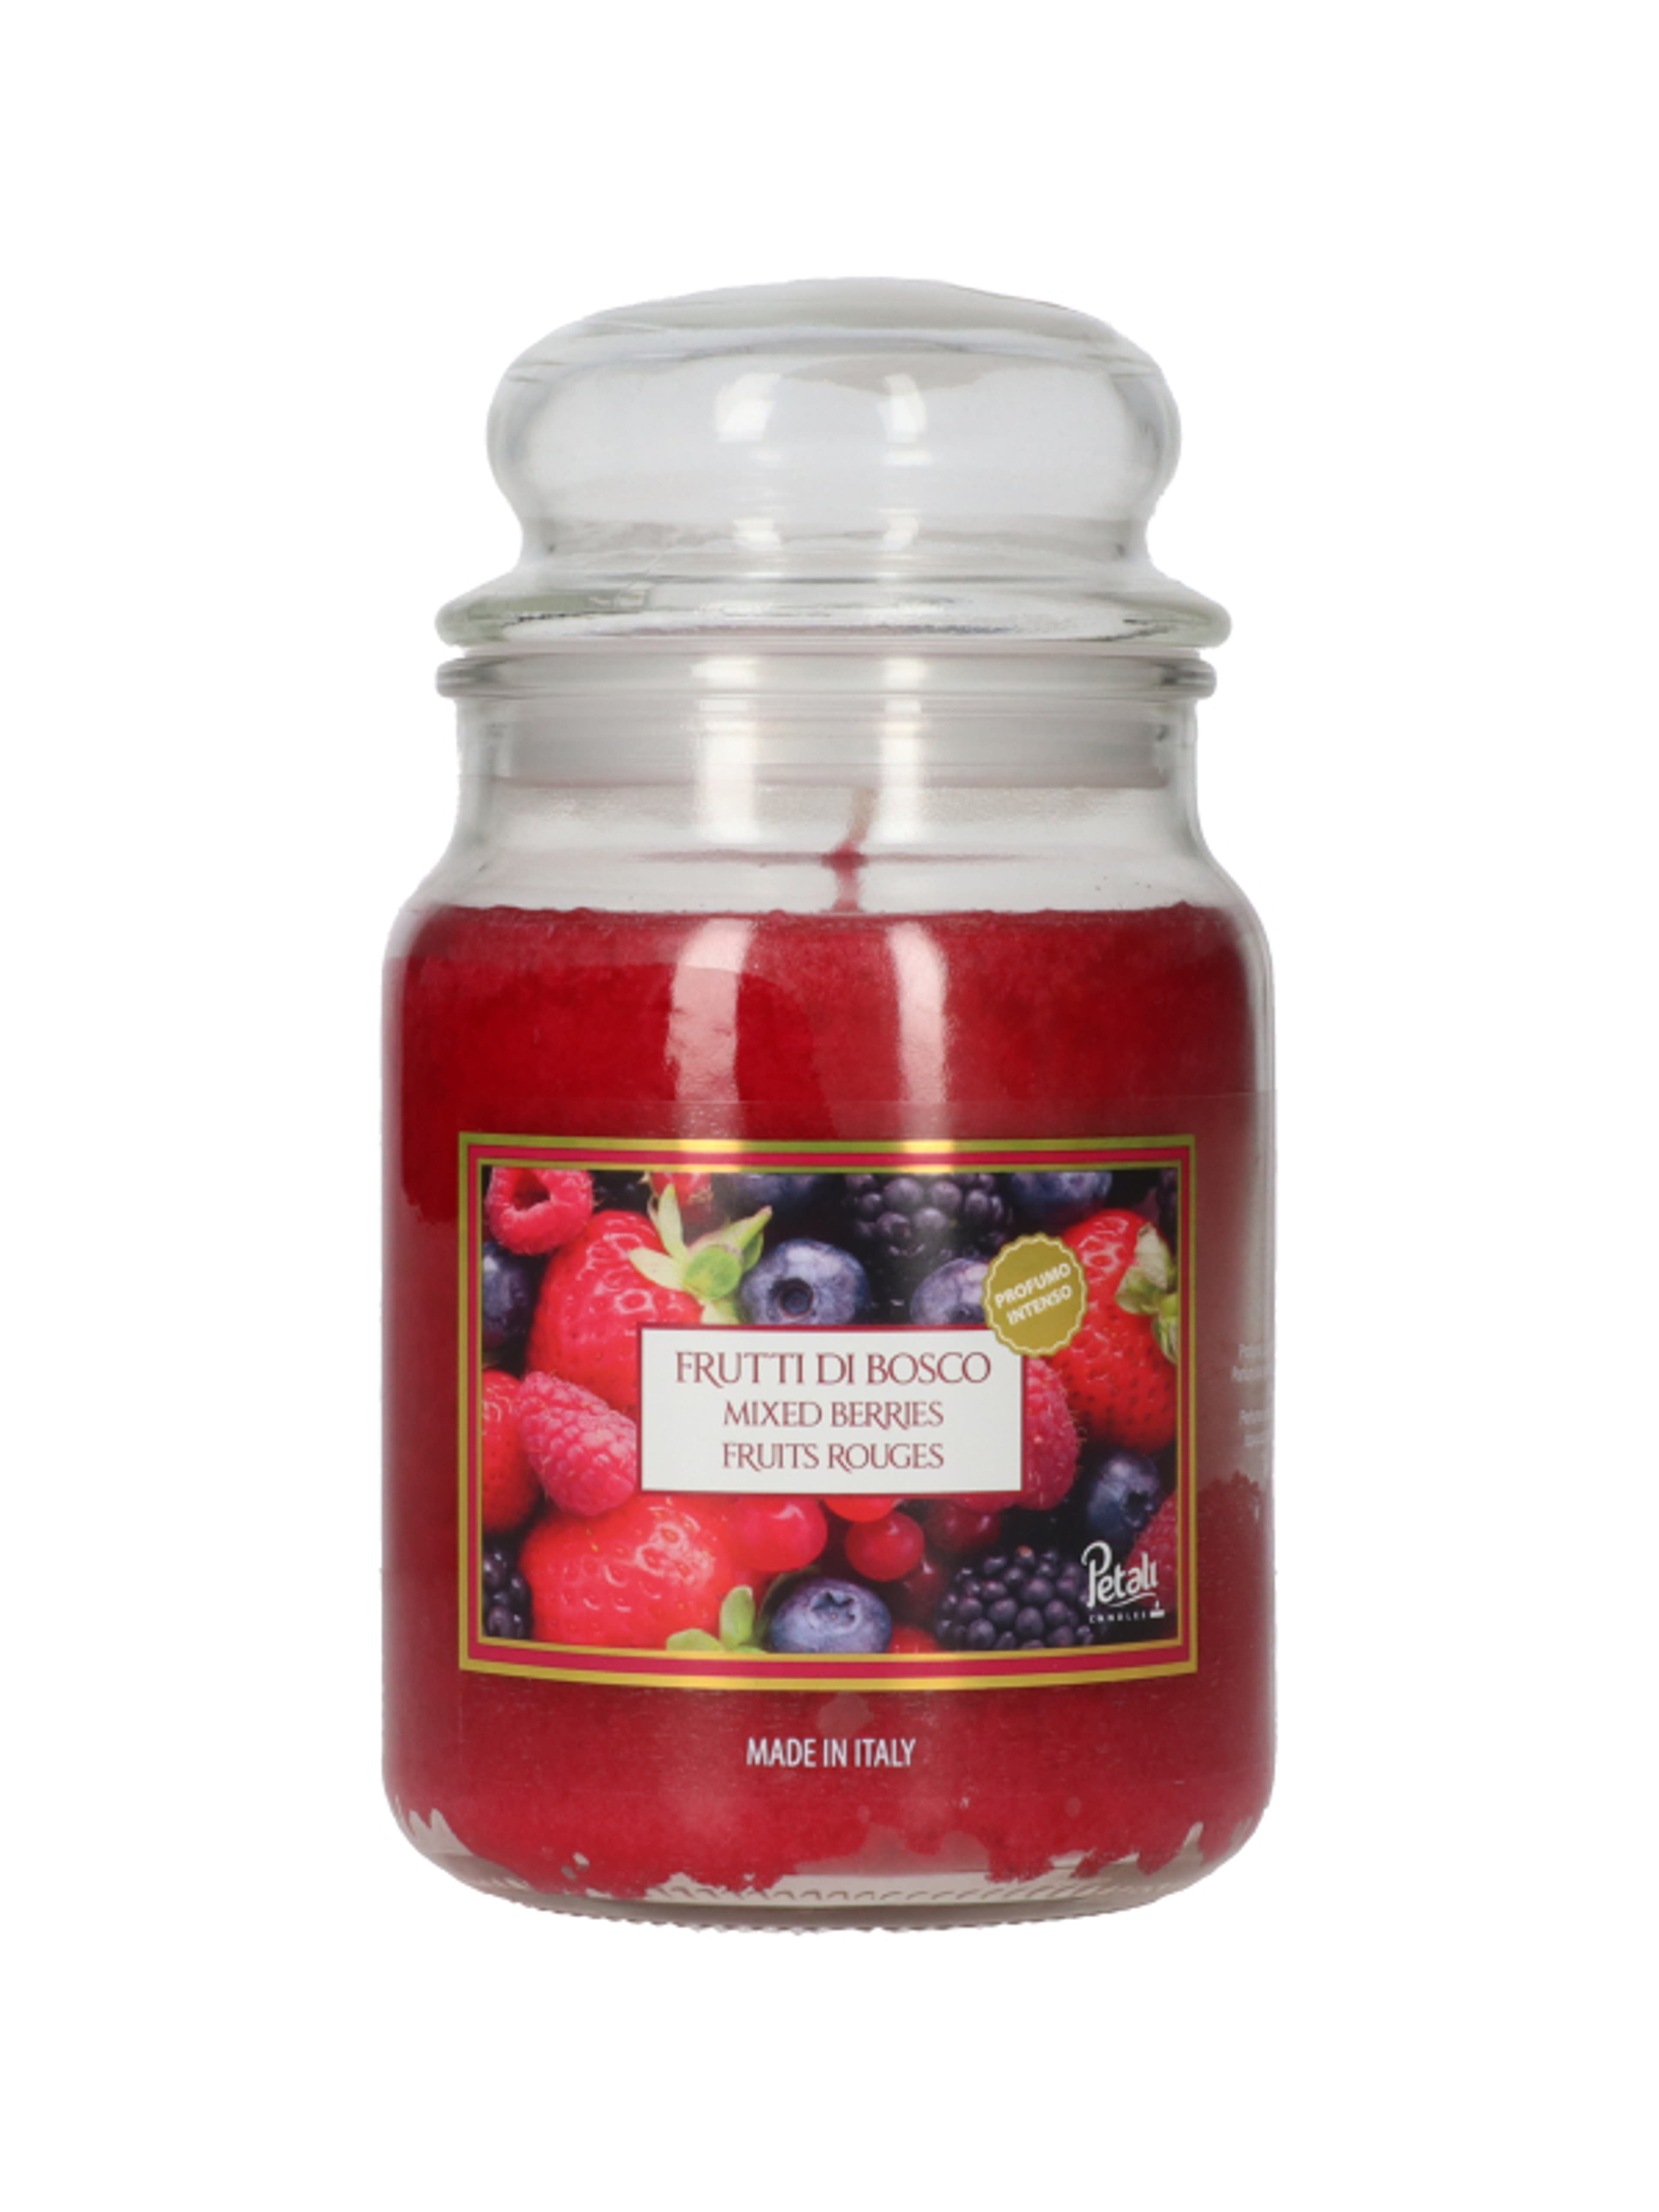 Üveg illatgyertya, Mixed Berry, 510 g - 1 db